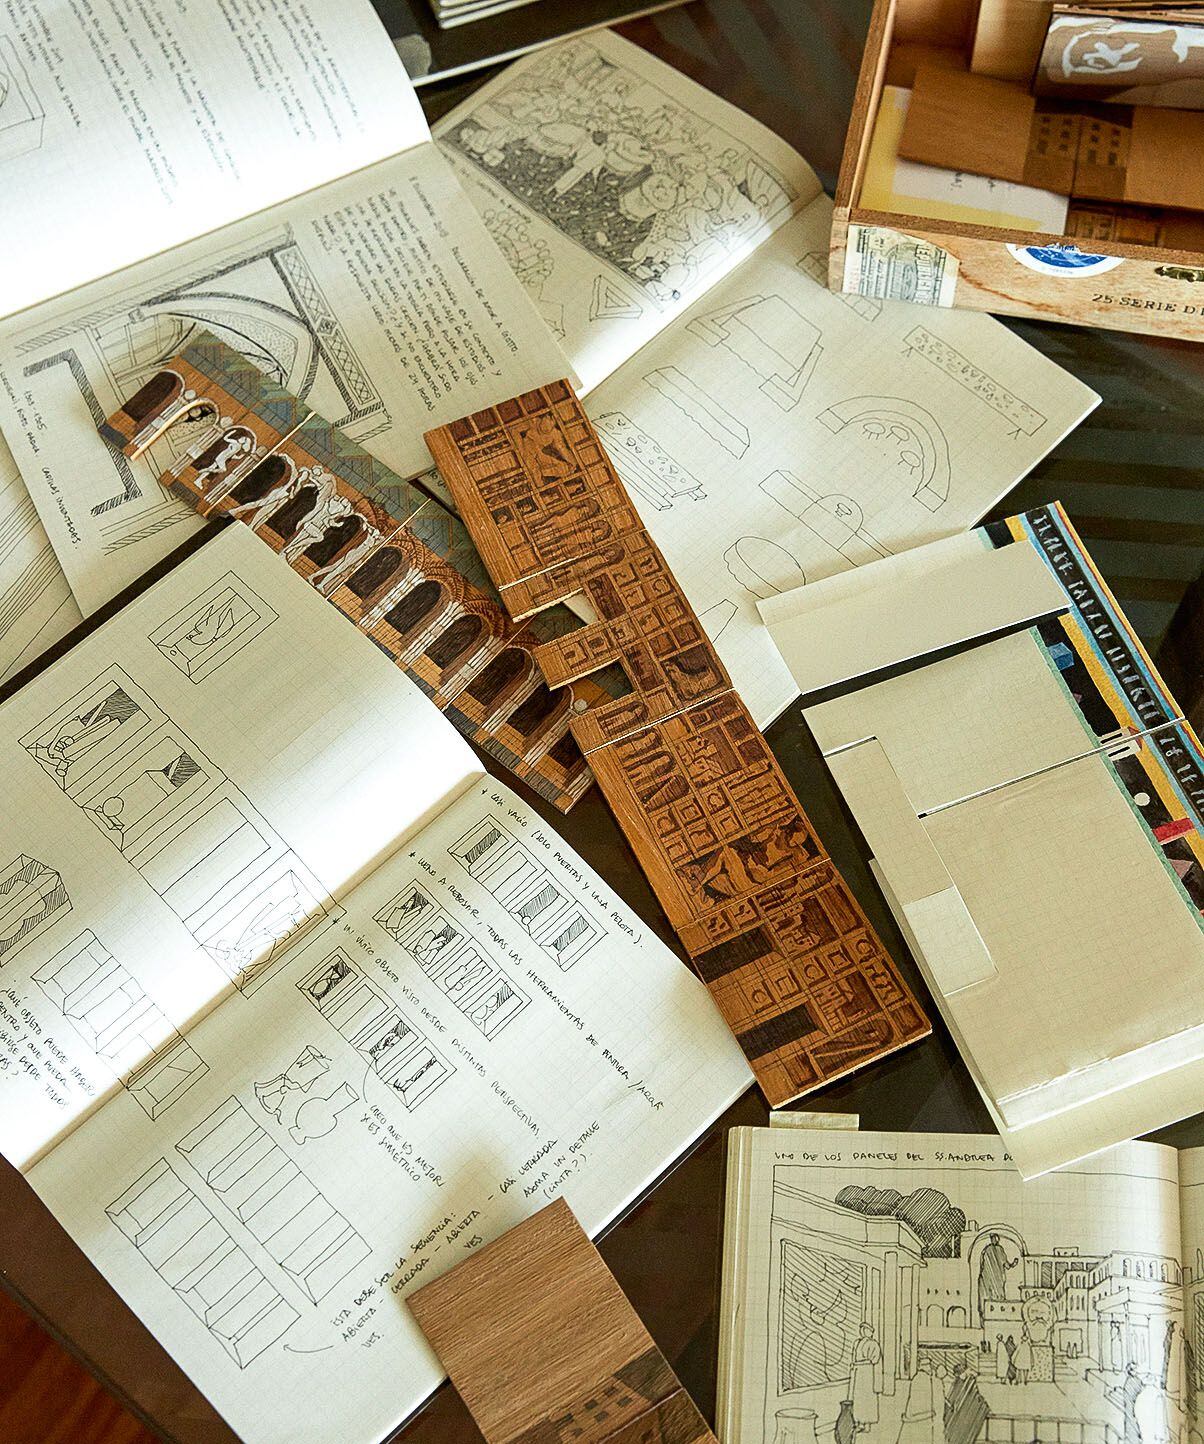 Algunos de sus apuntes y maquetas de sus proyectos, que luego pliega y conserva archivadas en cajas.